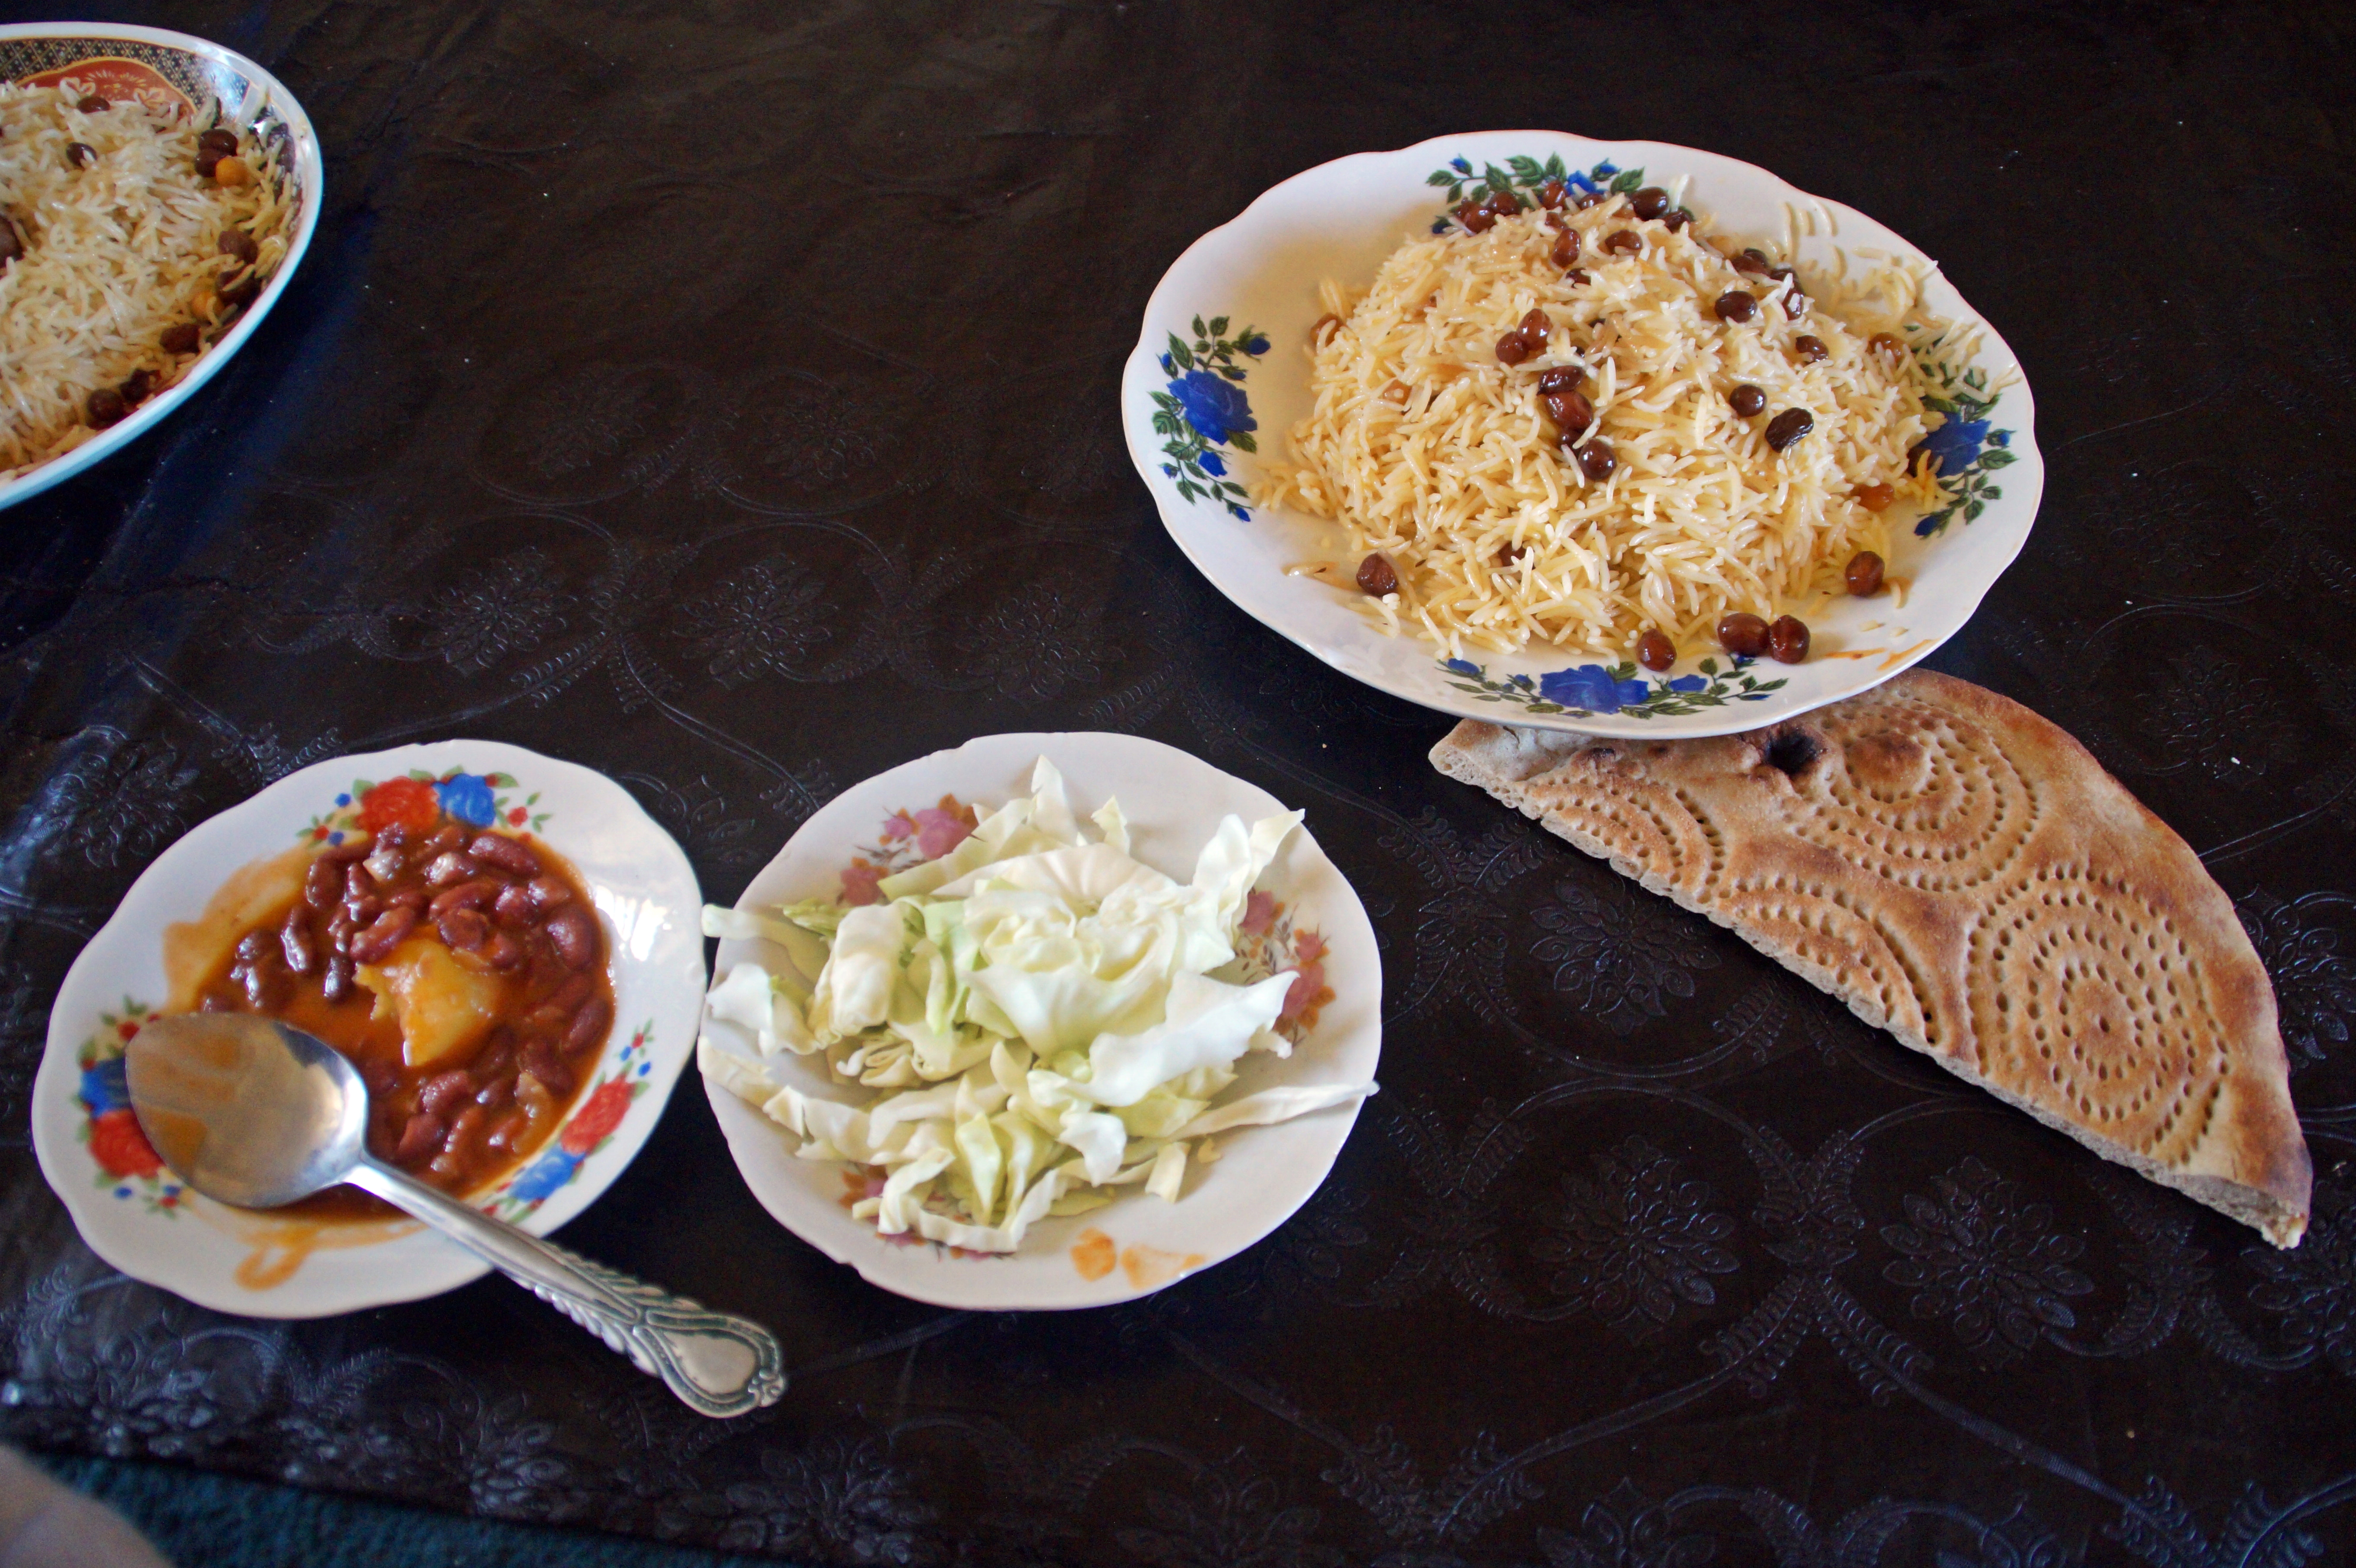 Traditional Afghan food